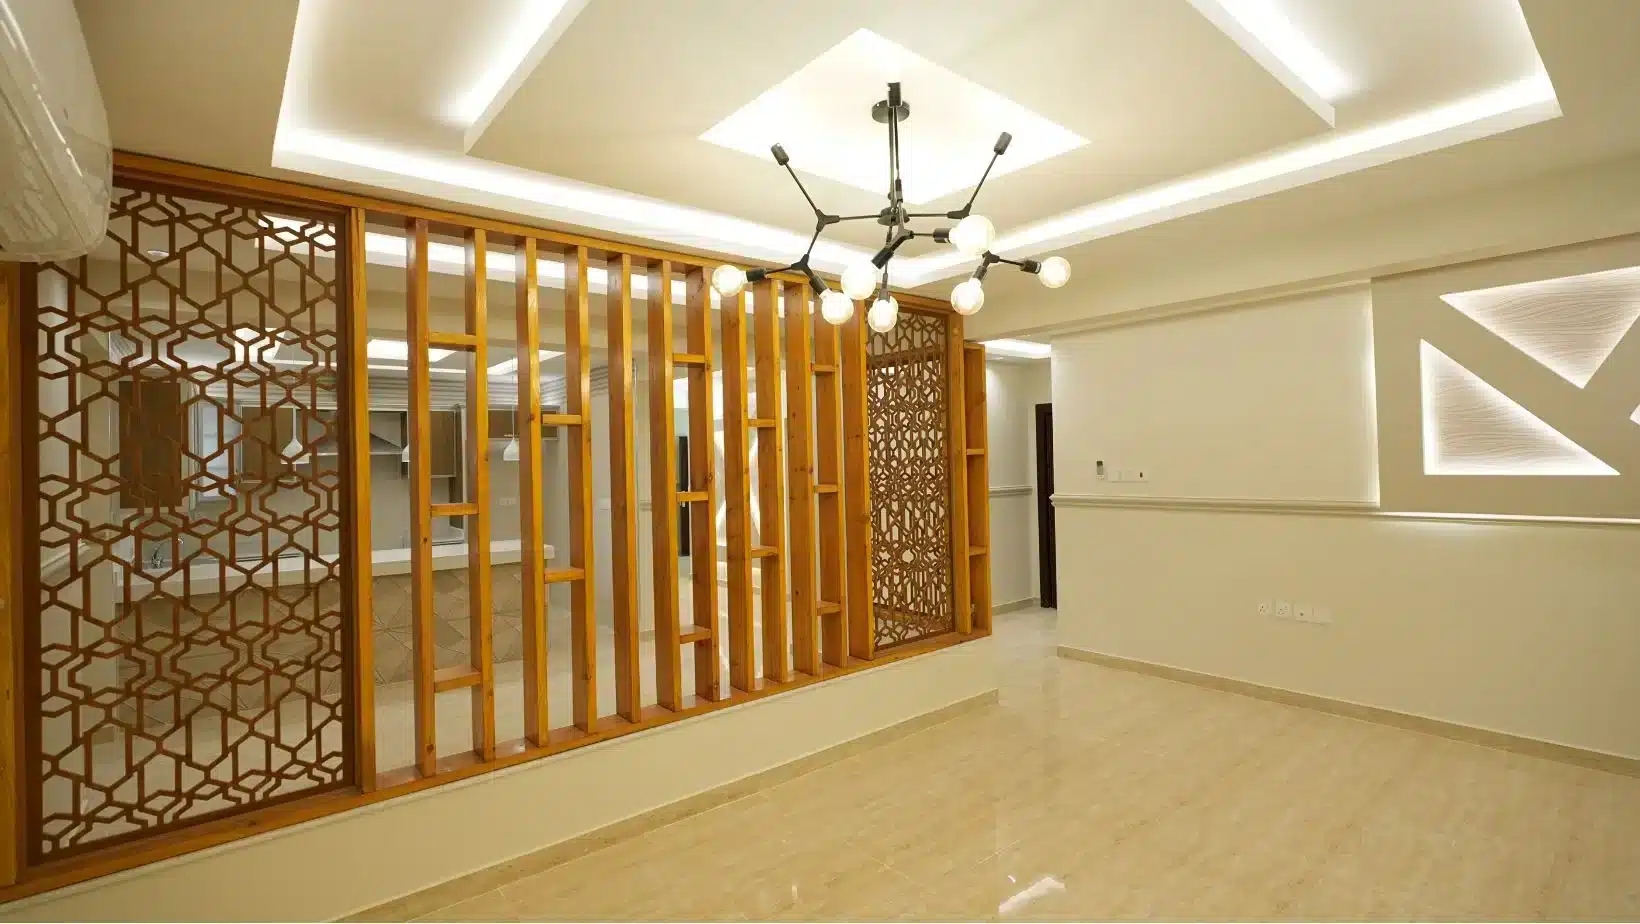 شقق السليمانية للإيجا بالرياض، Sulymaniah apartments for rent in Riyadh,